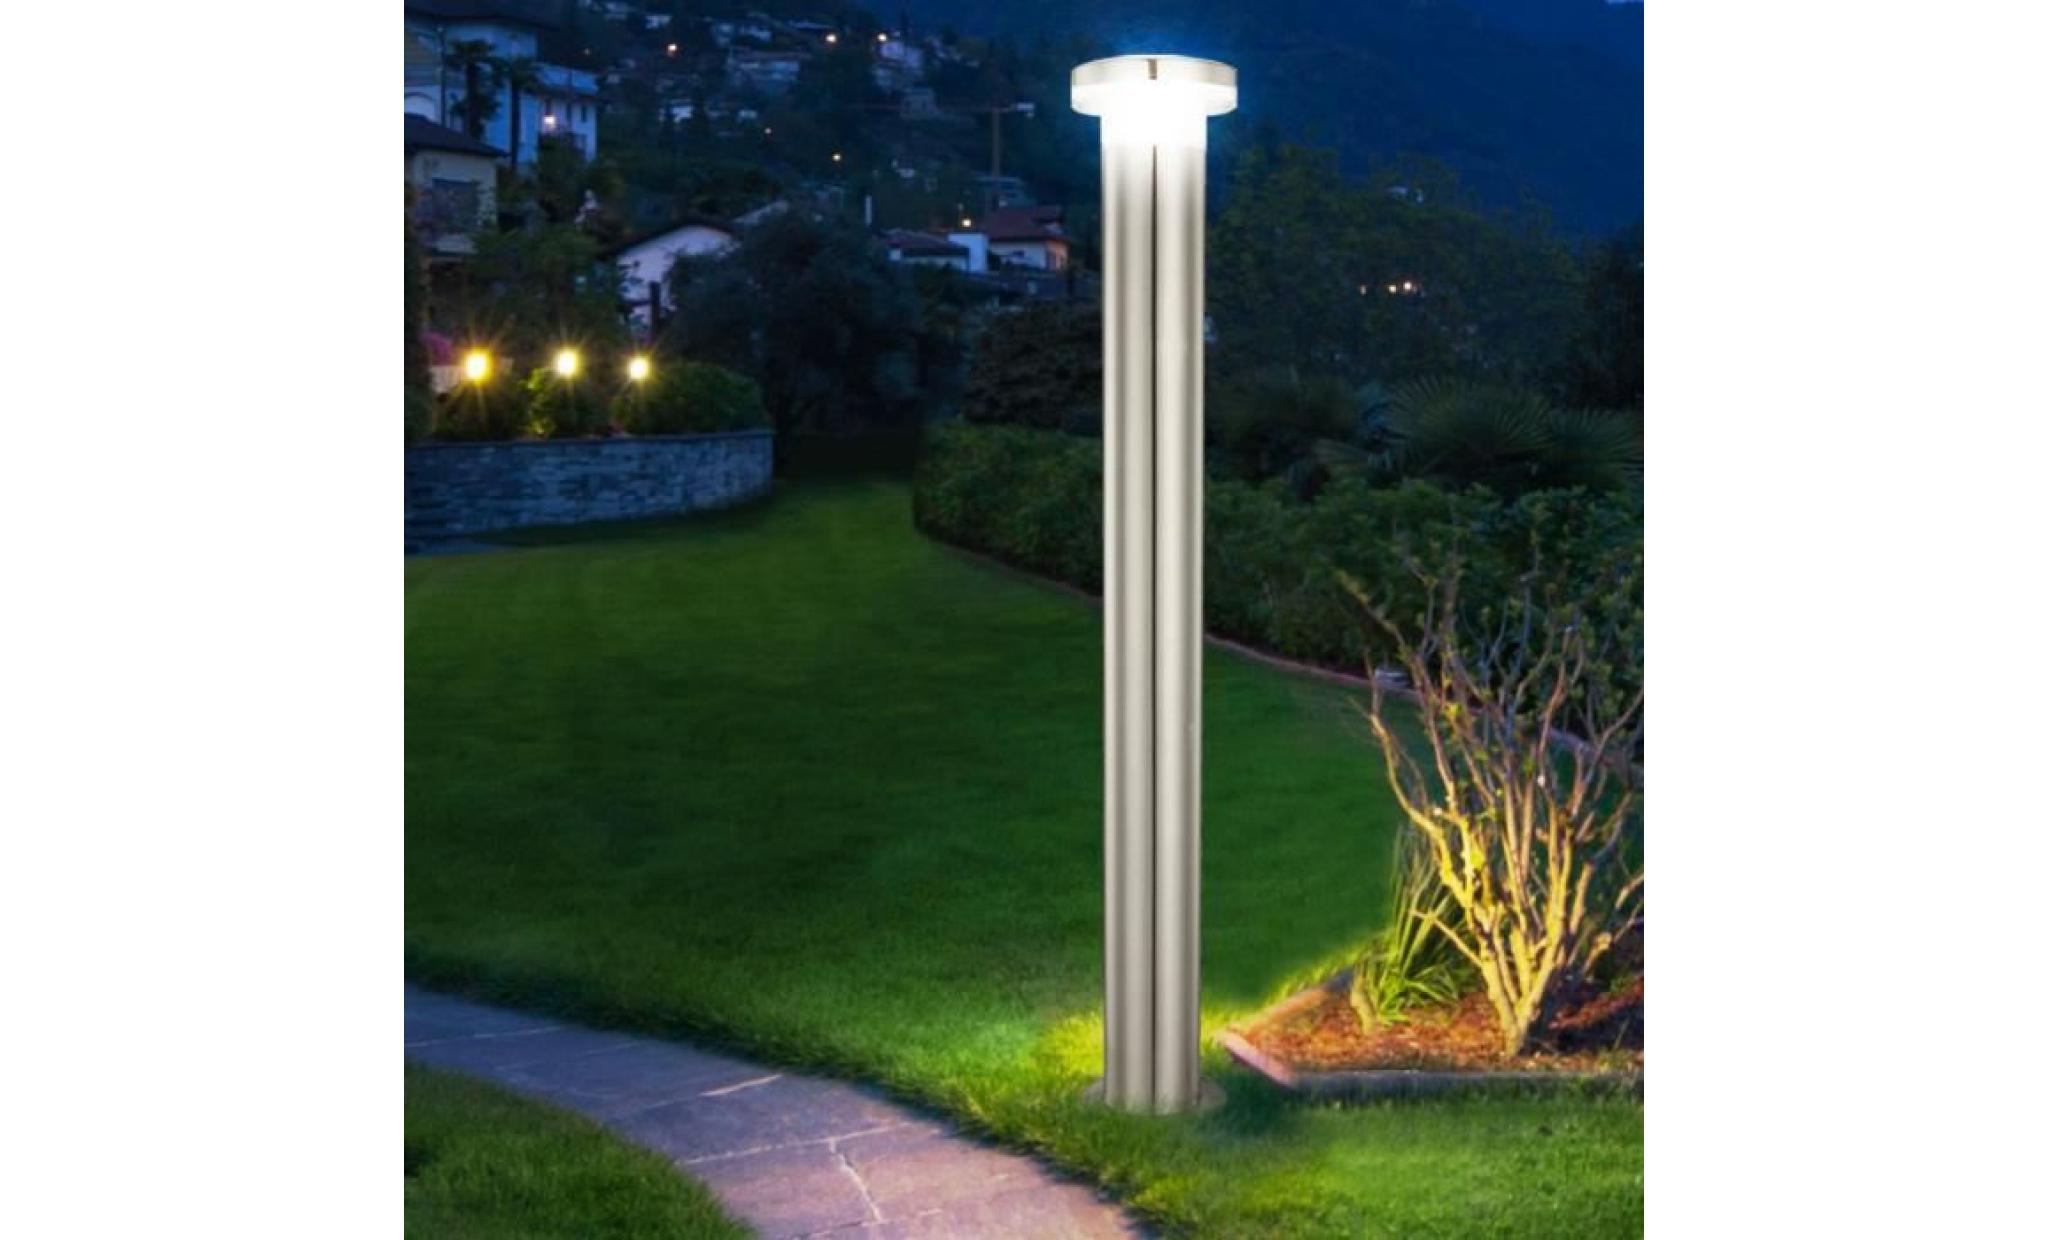 2 x lampadaire del luminaire sur pied espace extérieur jardin